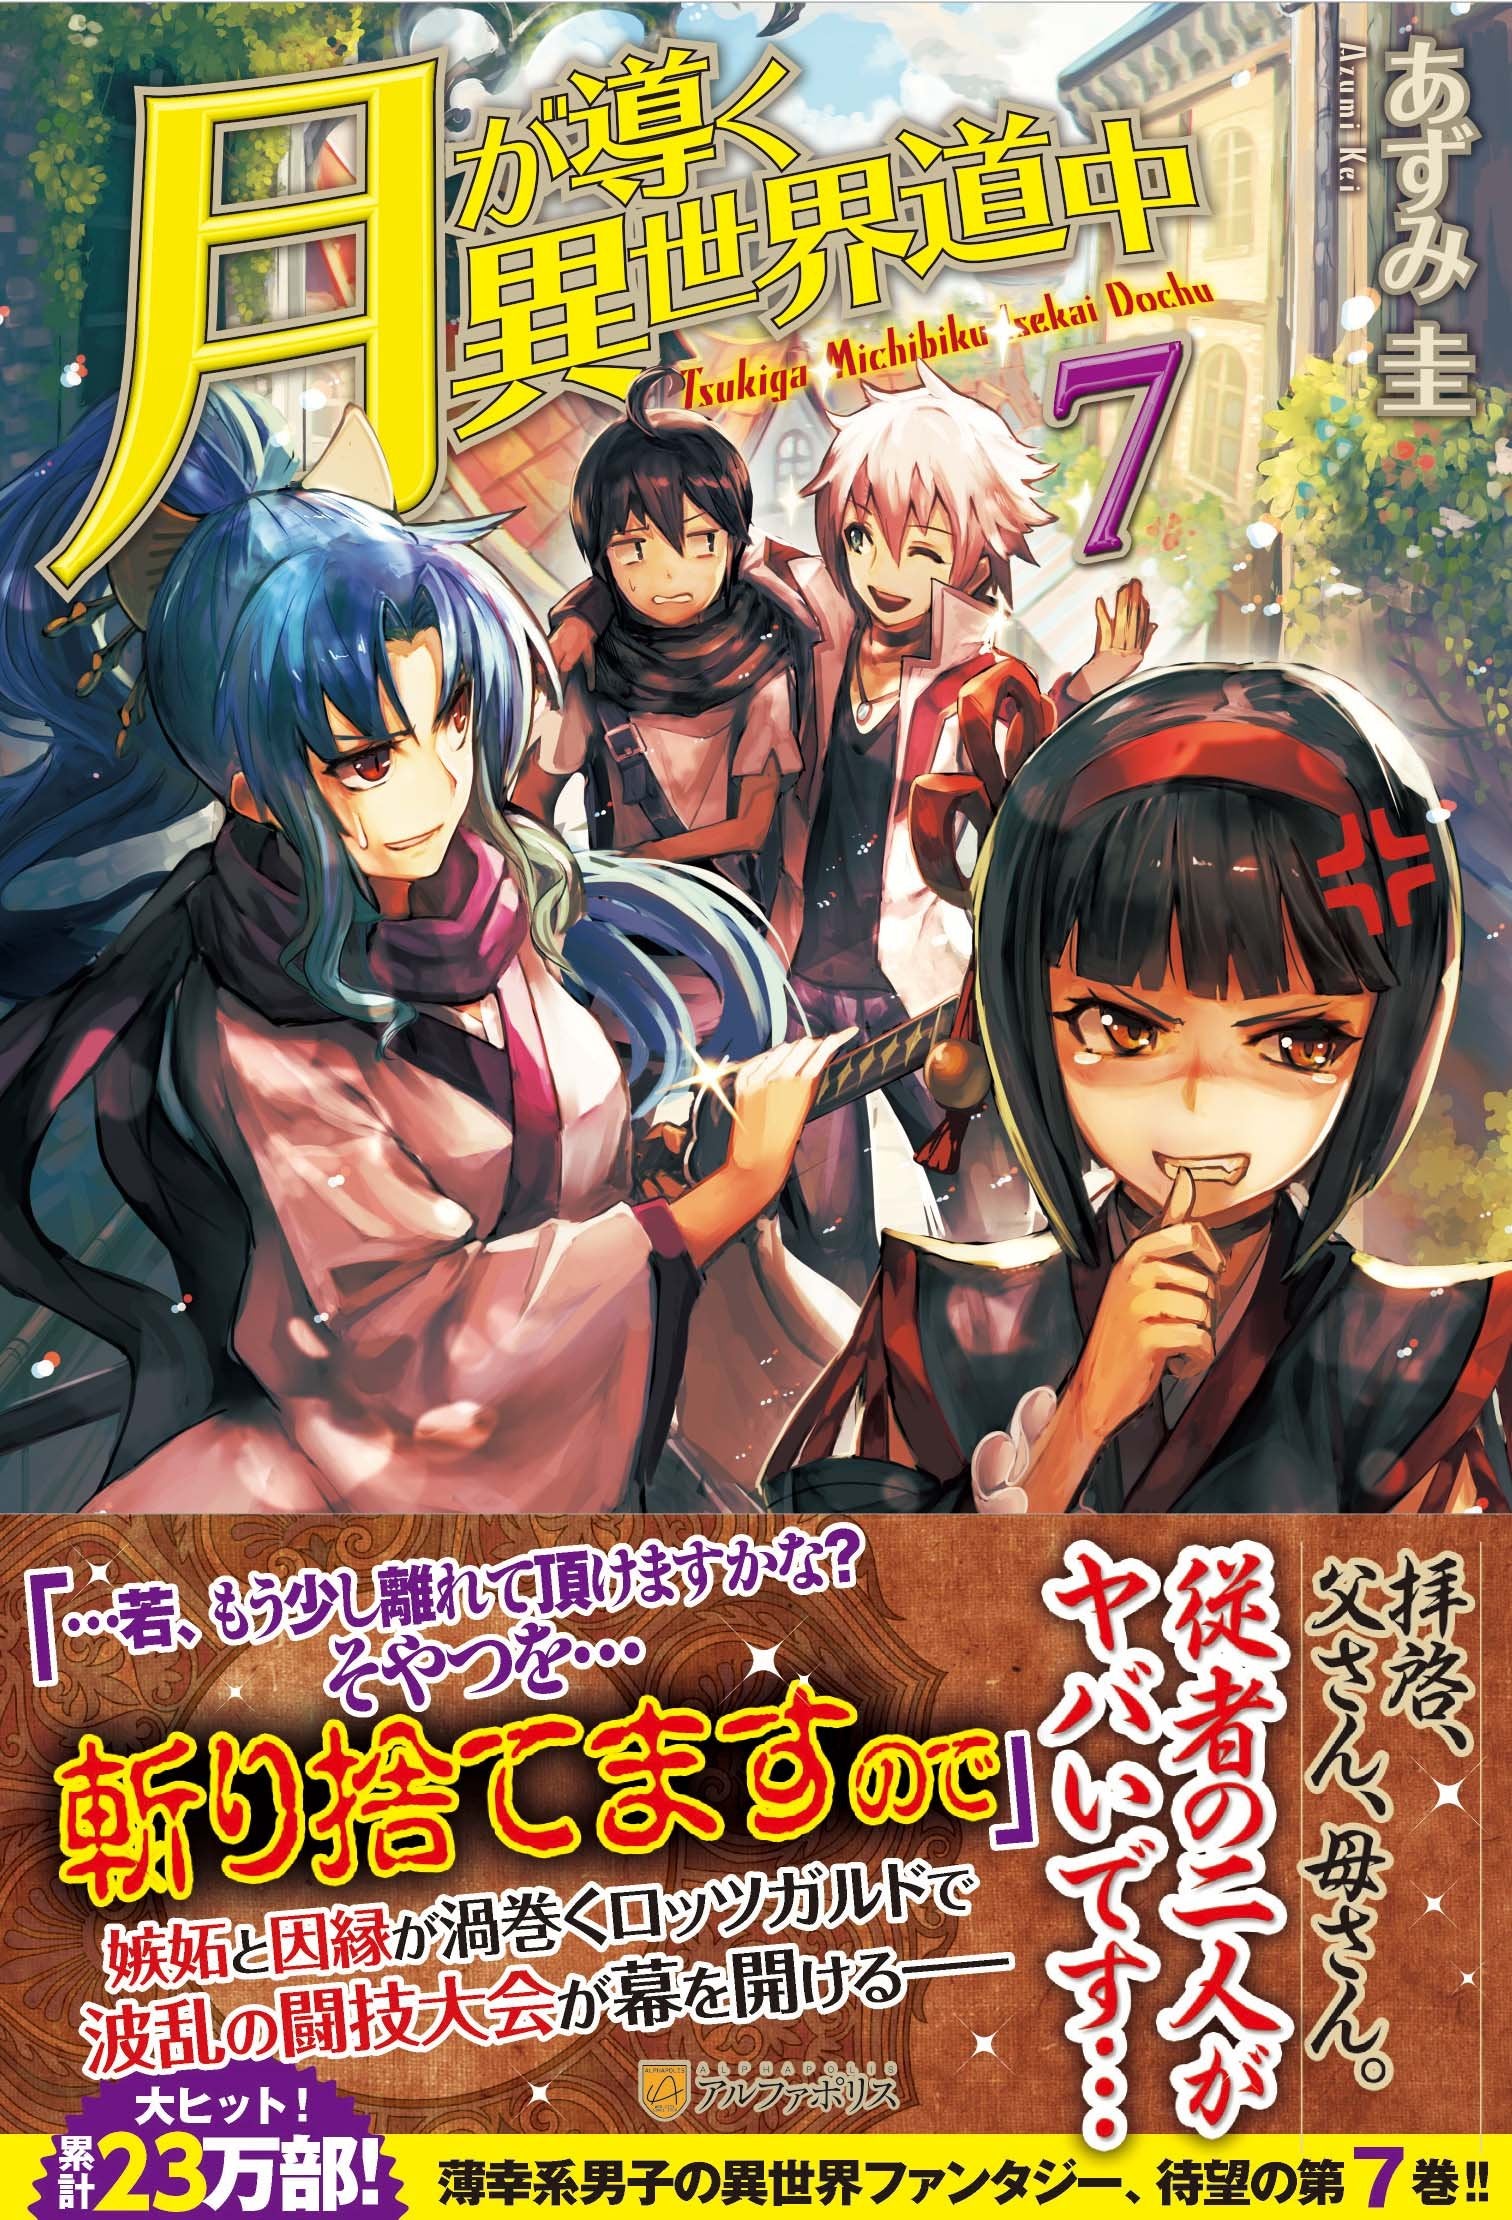 Tsukimichi: Moonlit Fantasy (Tsuki ga Michibiku Isekai Douchuu) 17